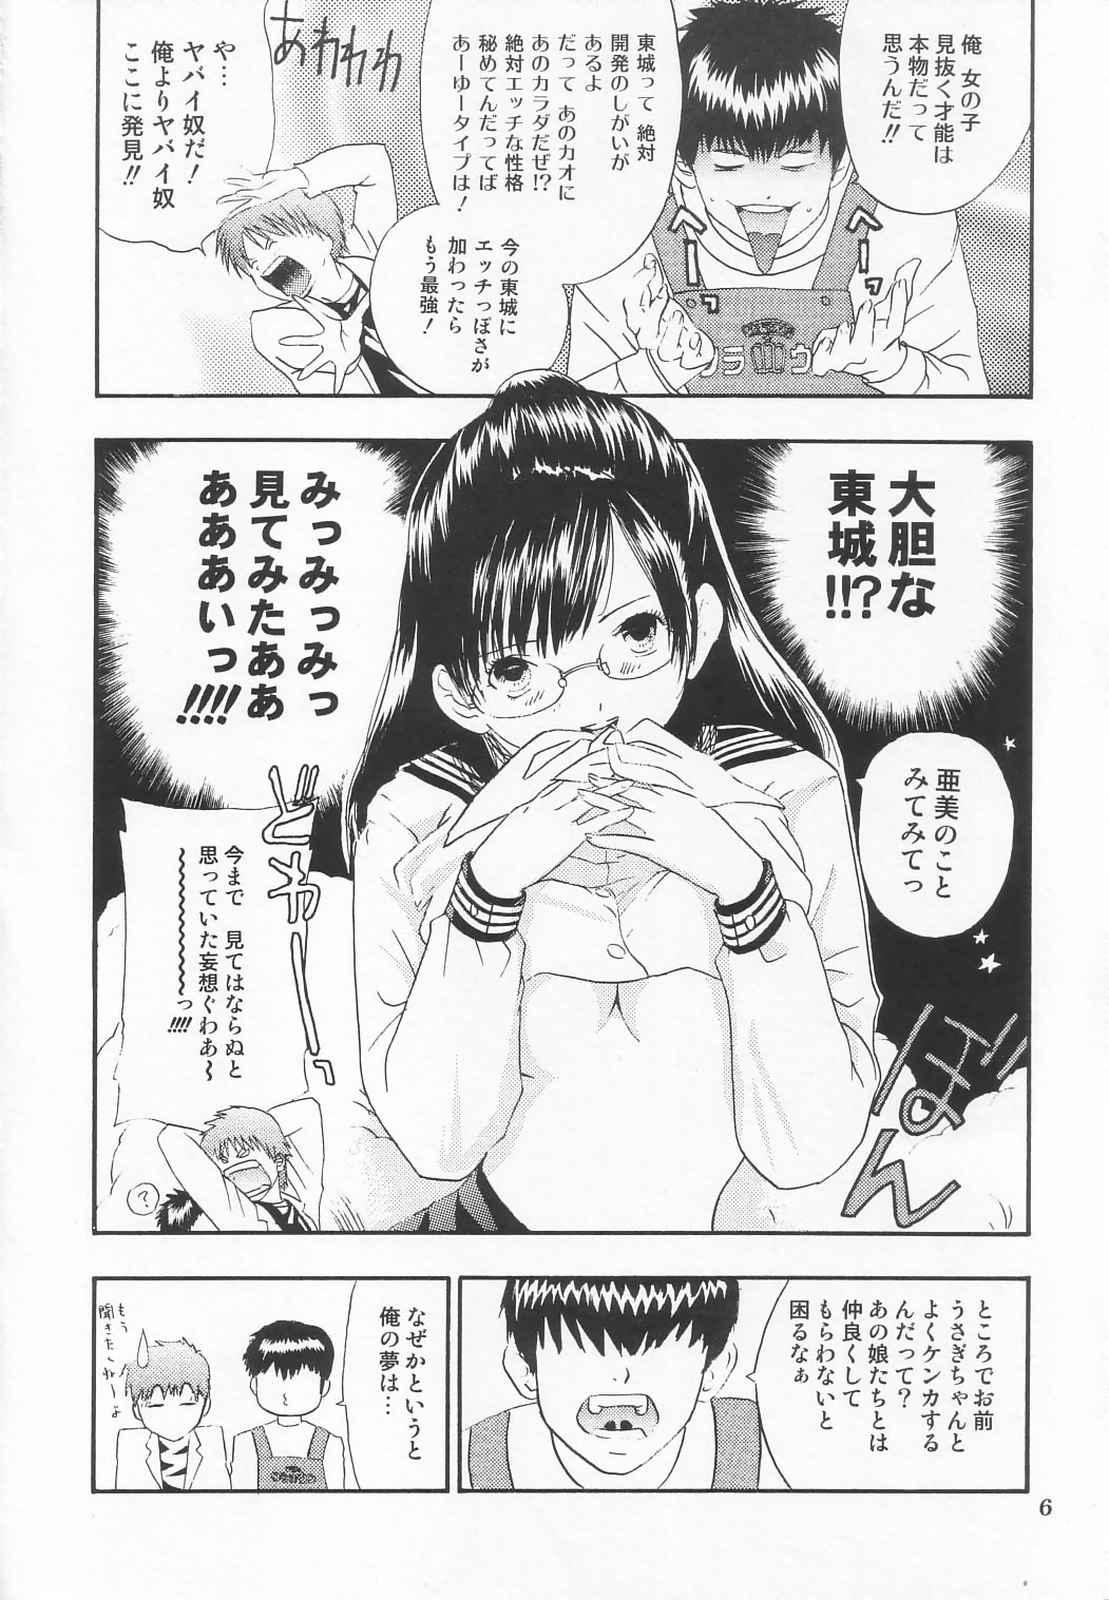 Letsdoeit Tokusatsu Magazine x 2003 Fuyu Gou - Sailor moon Ichigo 100 Asstomouth - Page 8